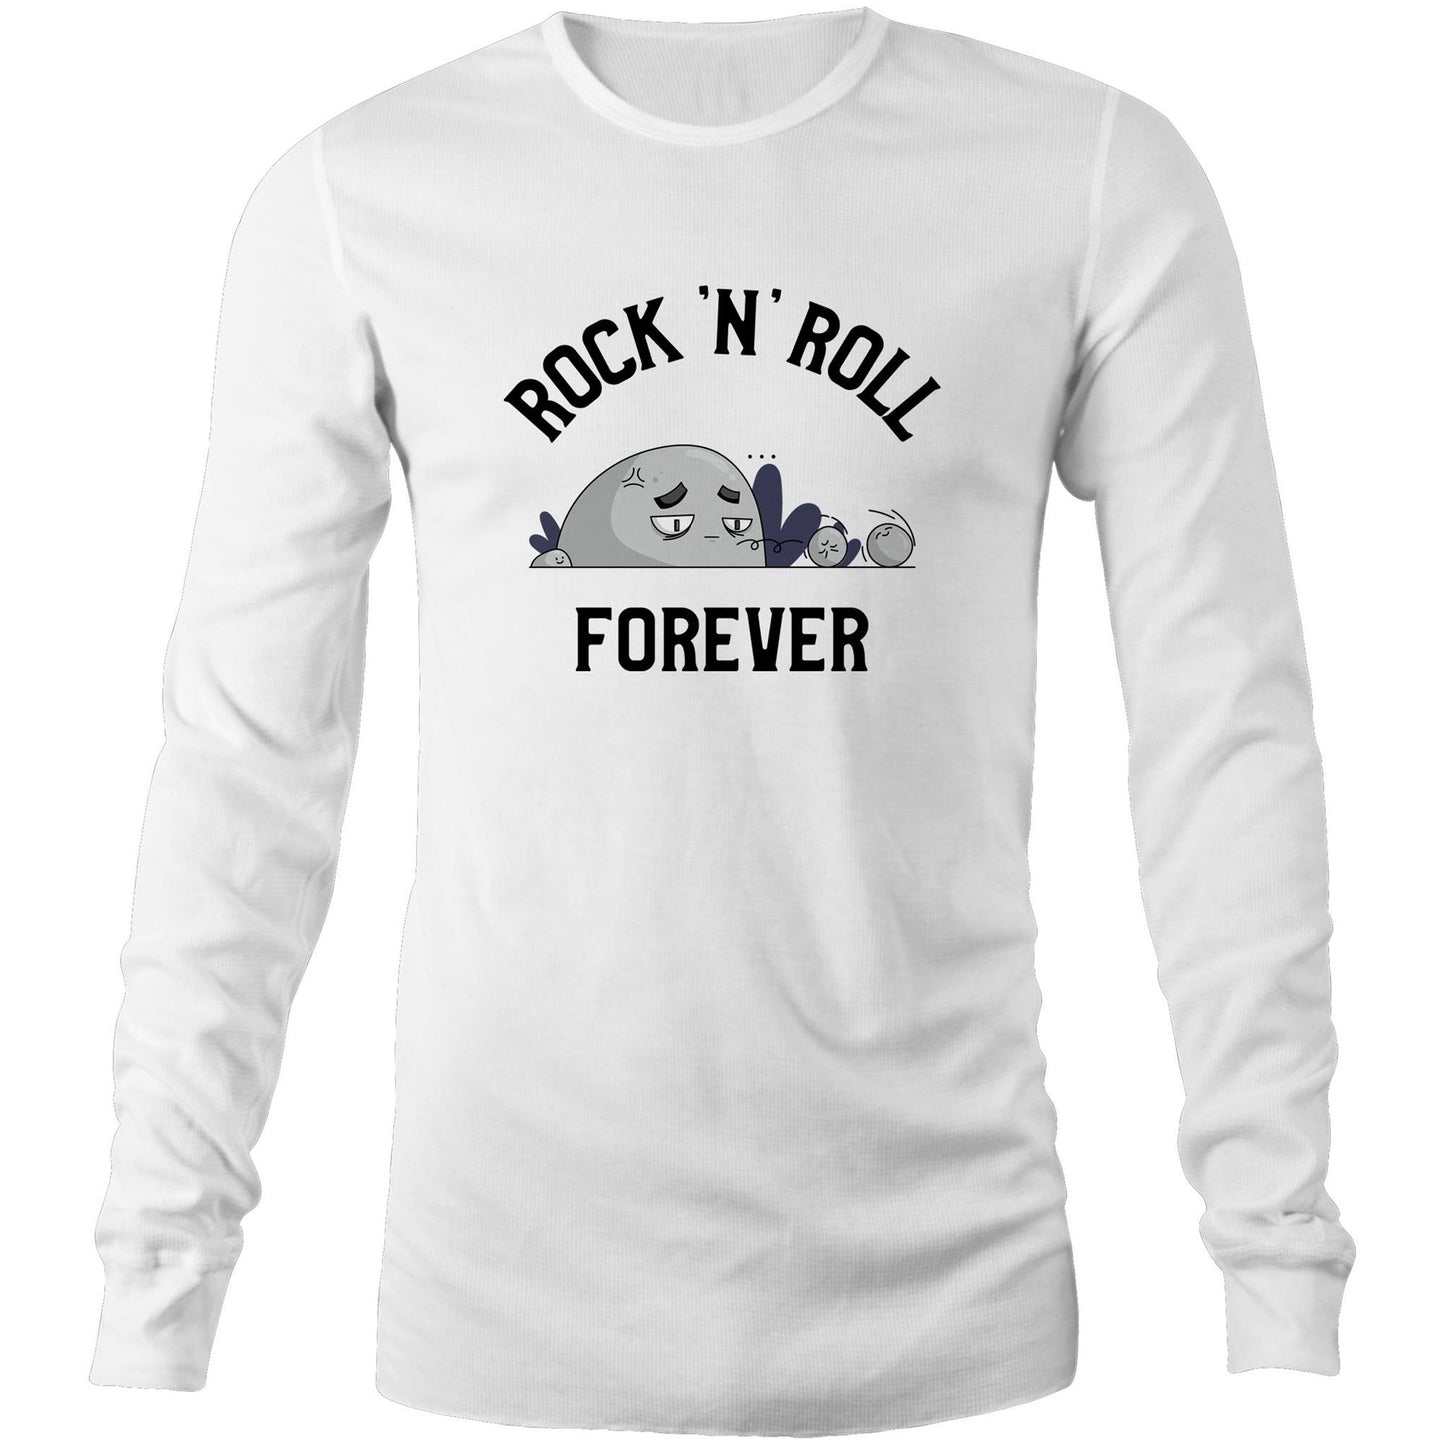 Rock 'N' Roll Forever - Long Sleeve T-Shirt White Unisex Long Sleeve T-shirt Music